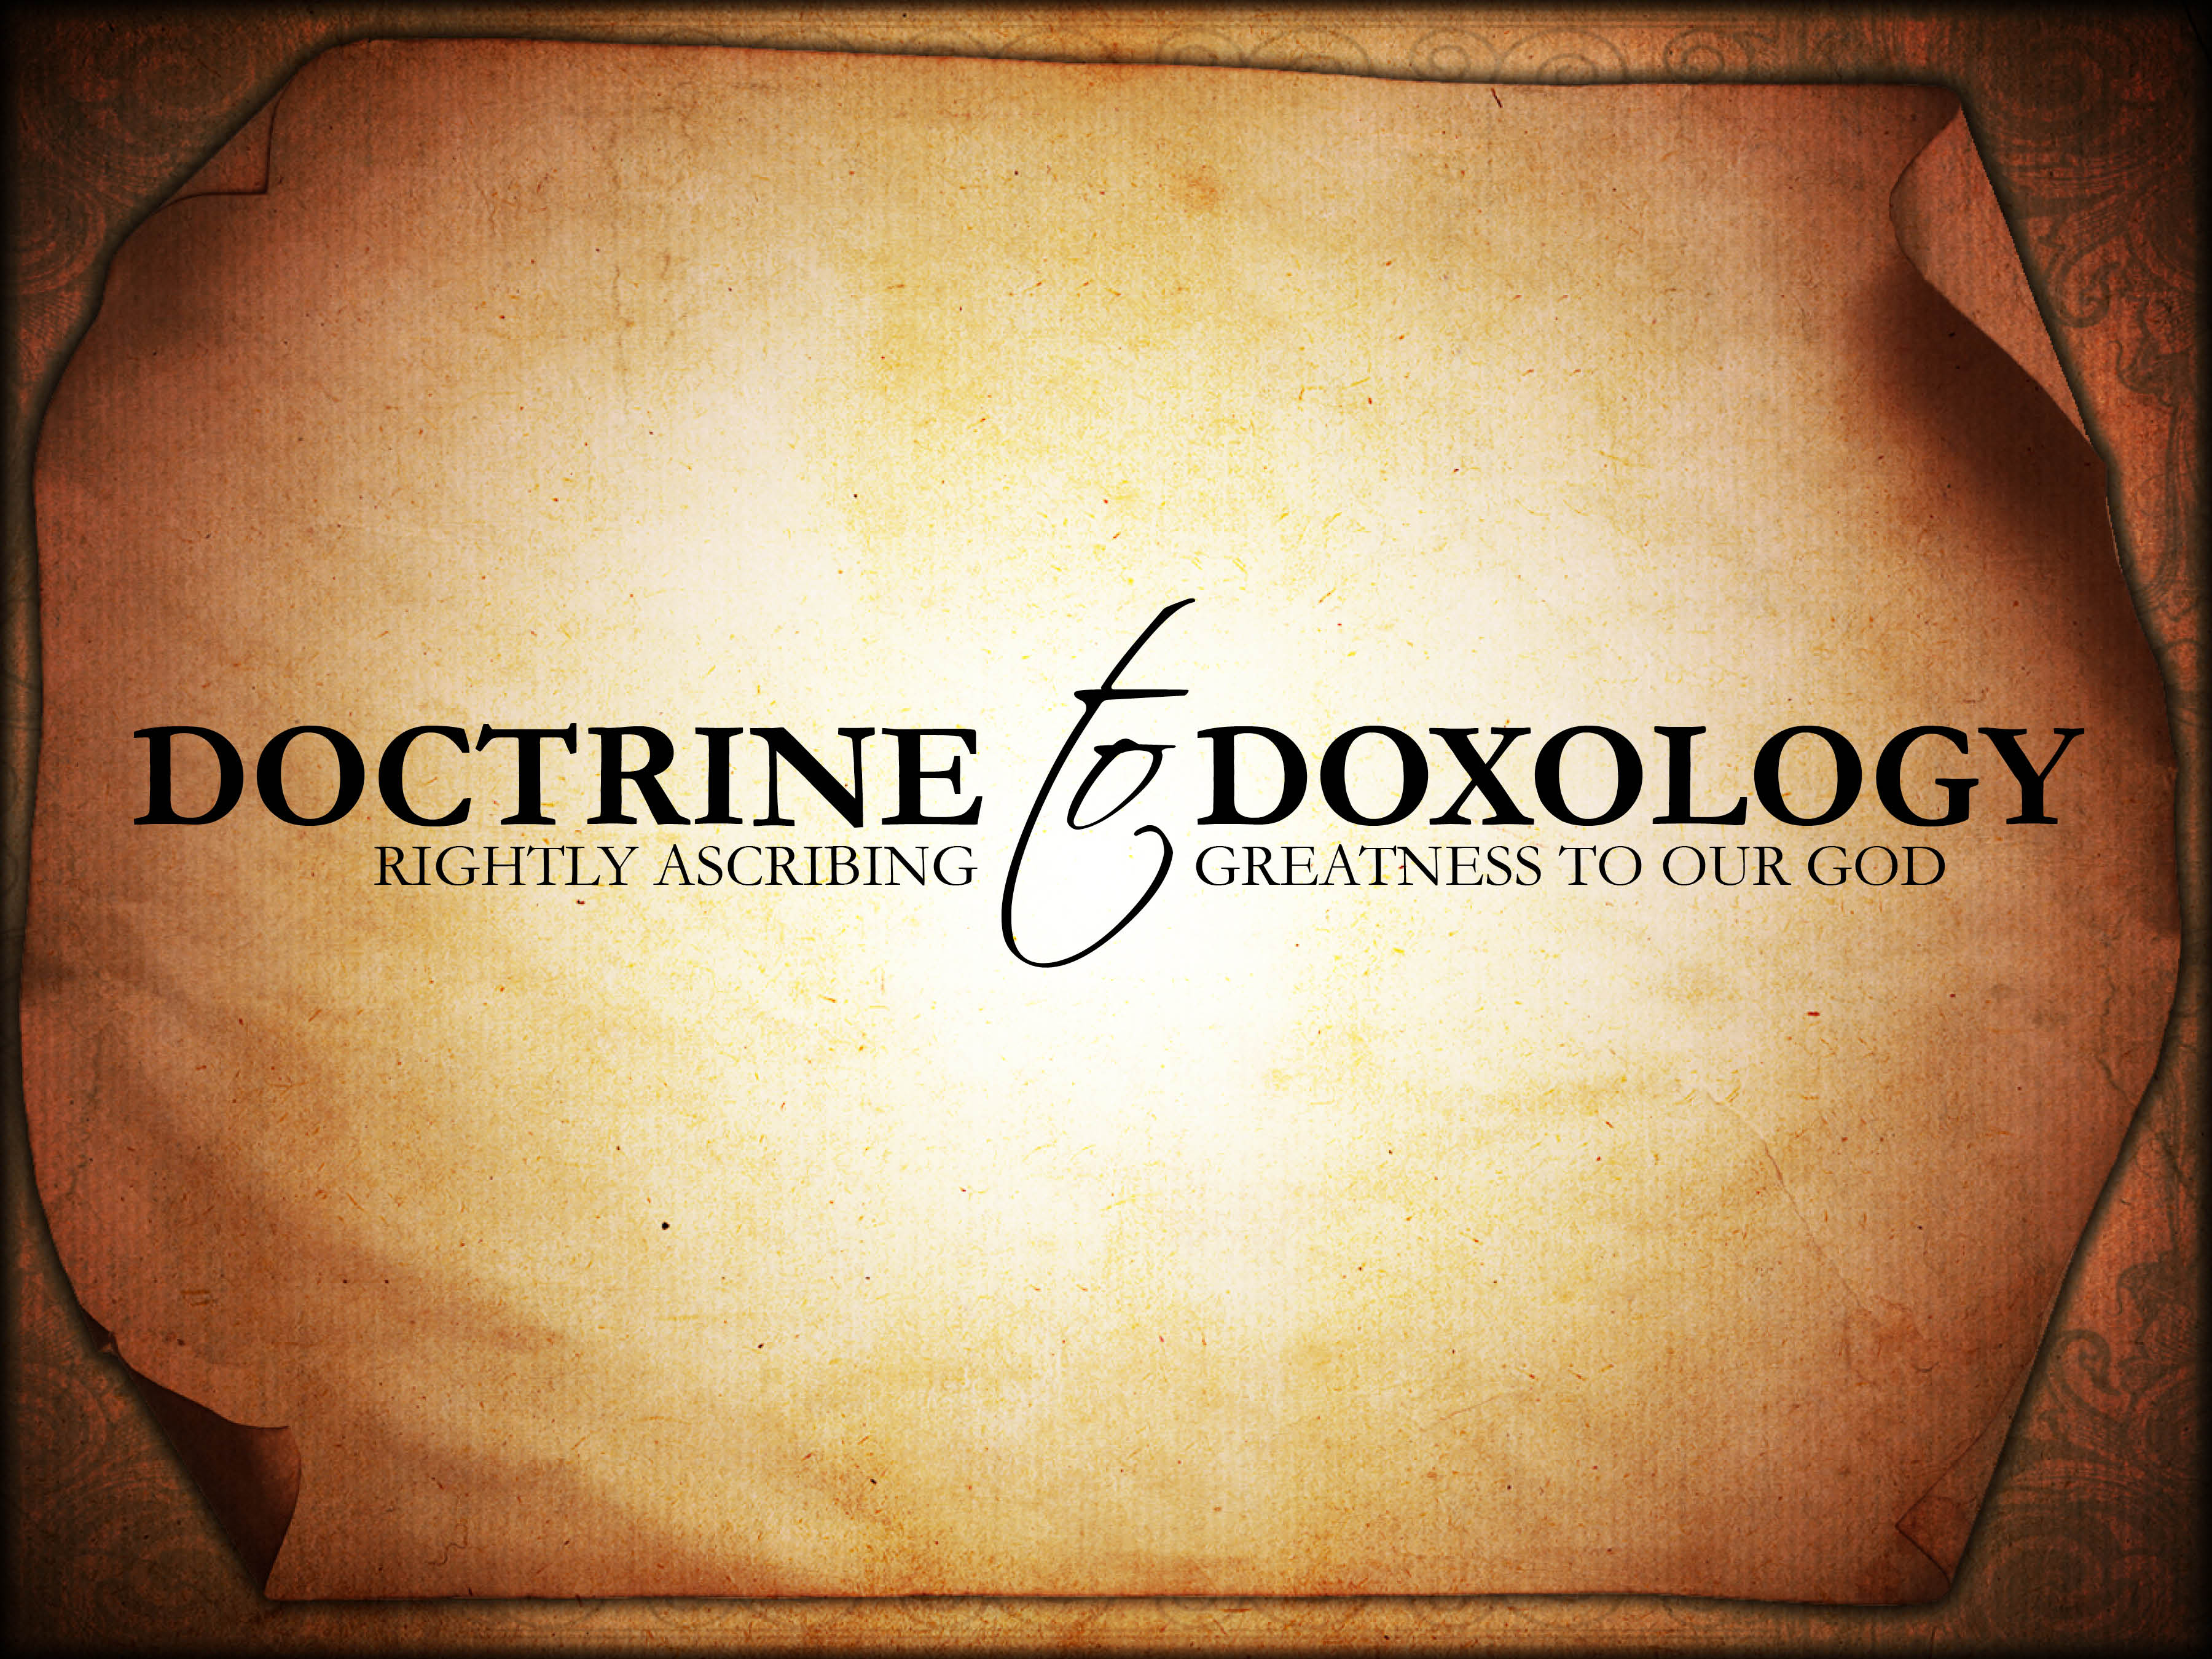 Doctrine to Doxology: Trinity